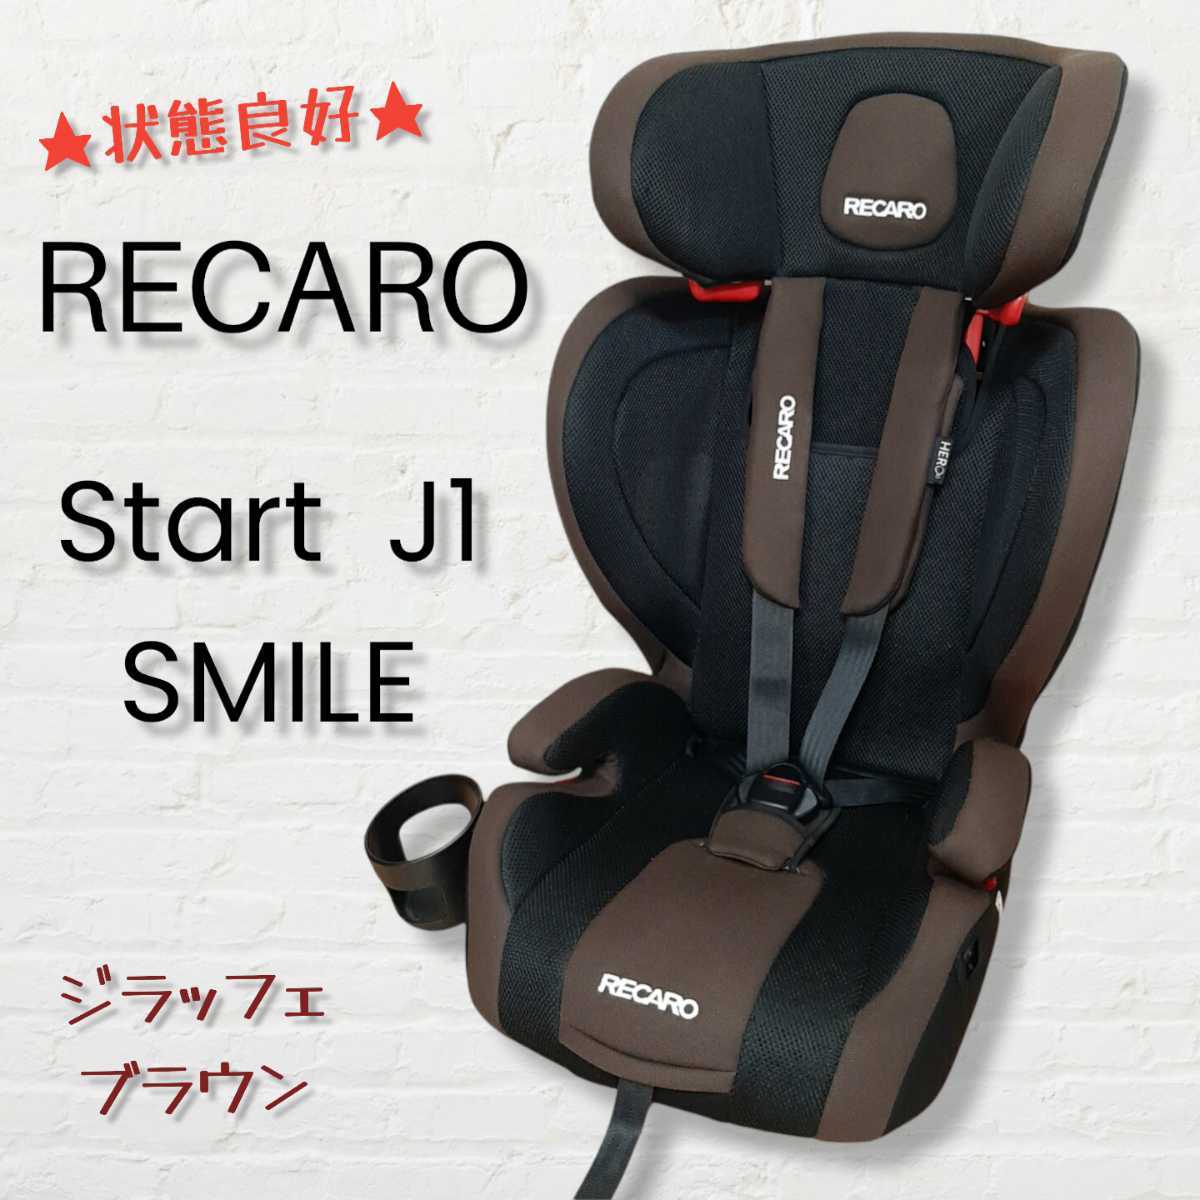 RECARO START J1 SMILE レカロ スタート J1 スマイル チャイルドシート 